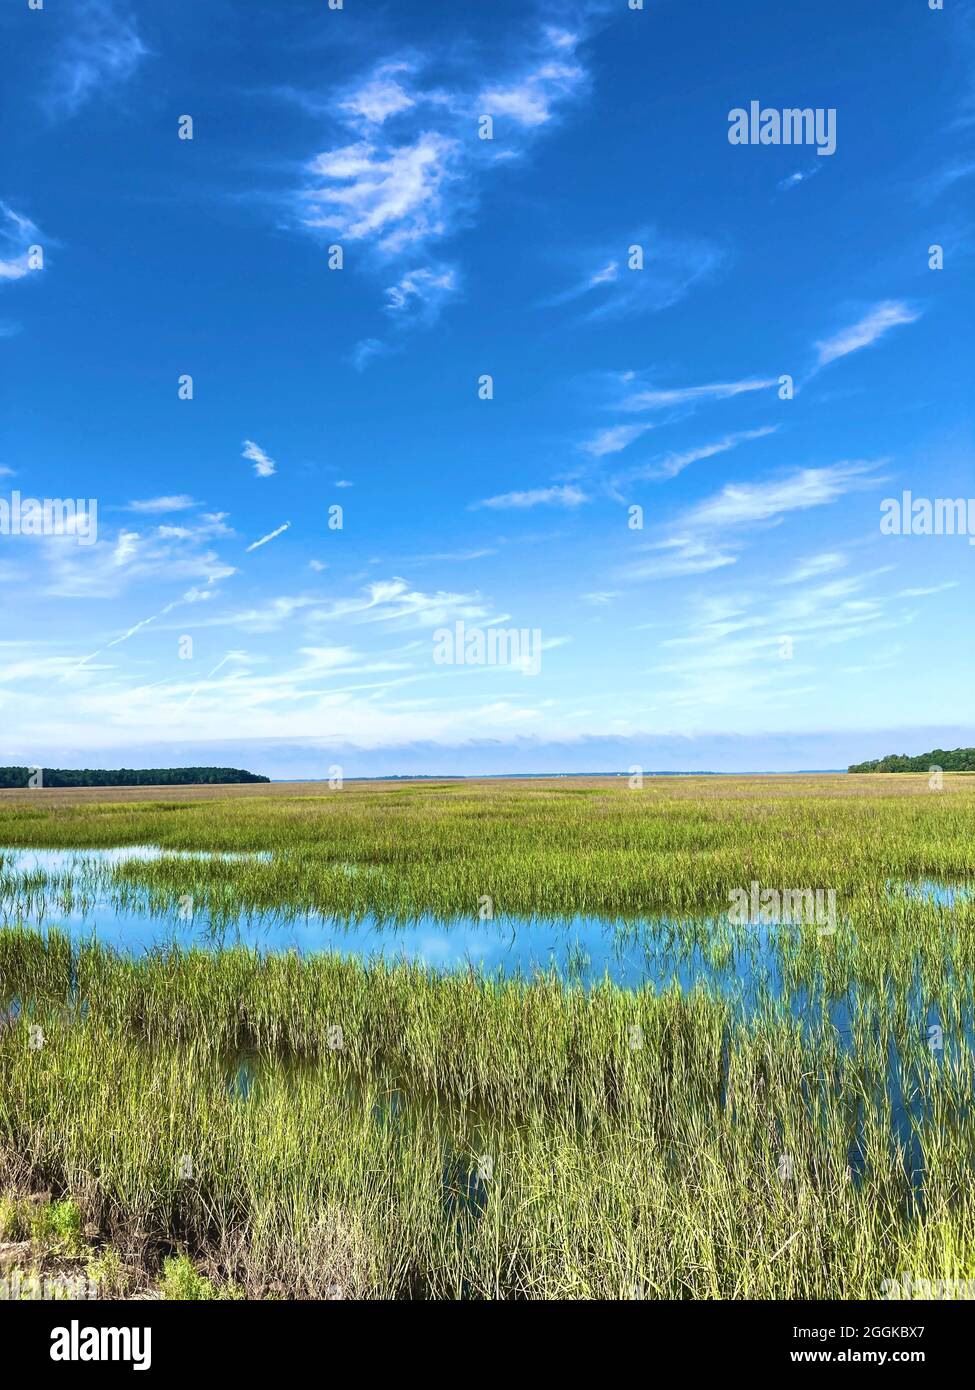 Île Sainte-Hélène, Caroline du Sud. Marécages dominés par des espèces de plantes herbacées. Les marais fournissent des habitats à de nombreux types d'invertébrés, de poissons, d'amphibiens, de sauvagine et de mammifères aquatiques Banque D'Images